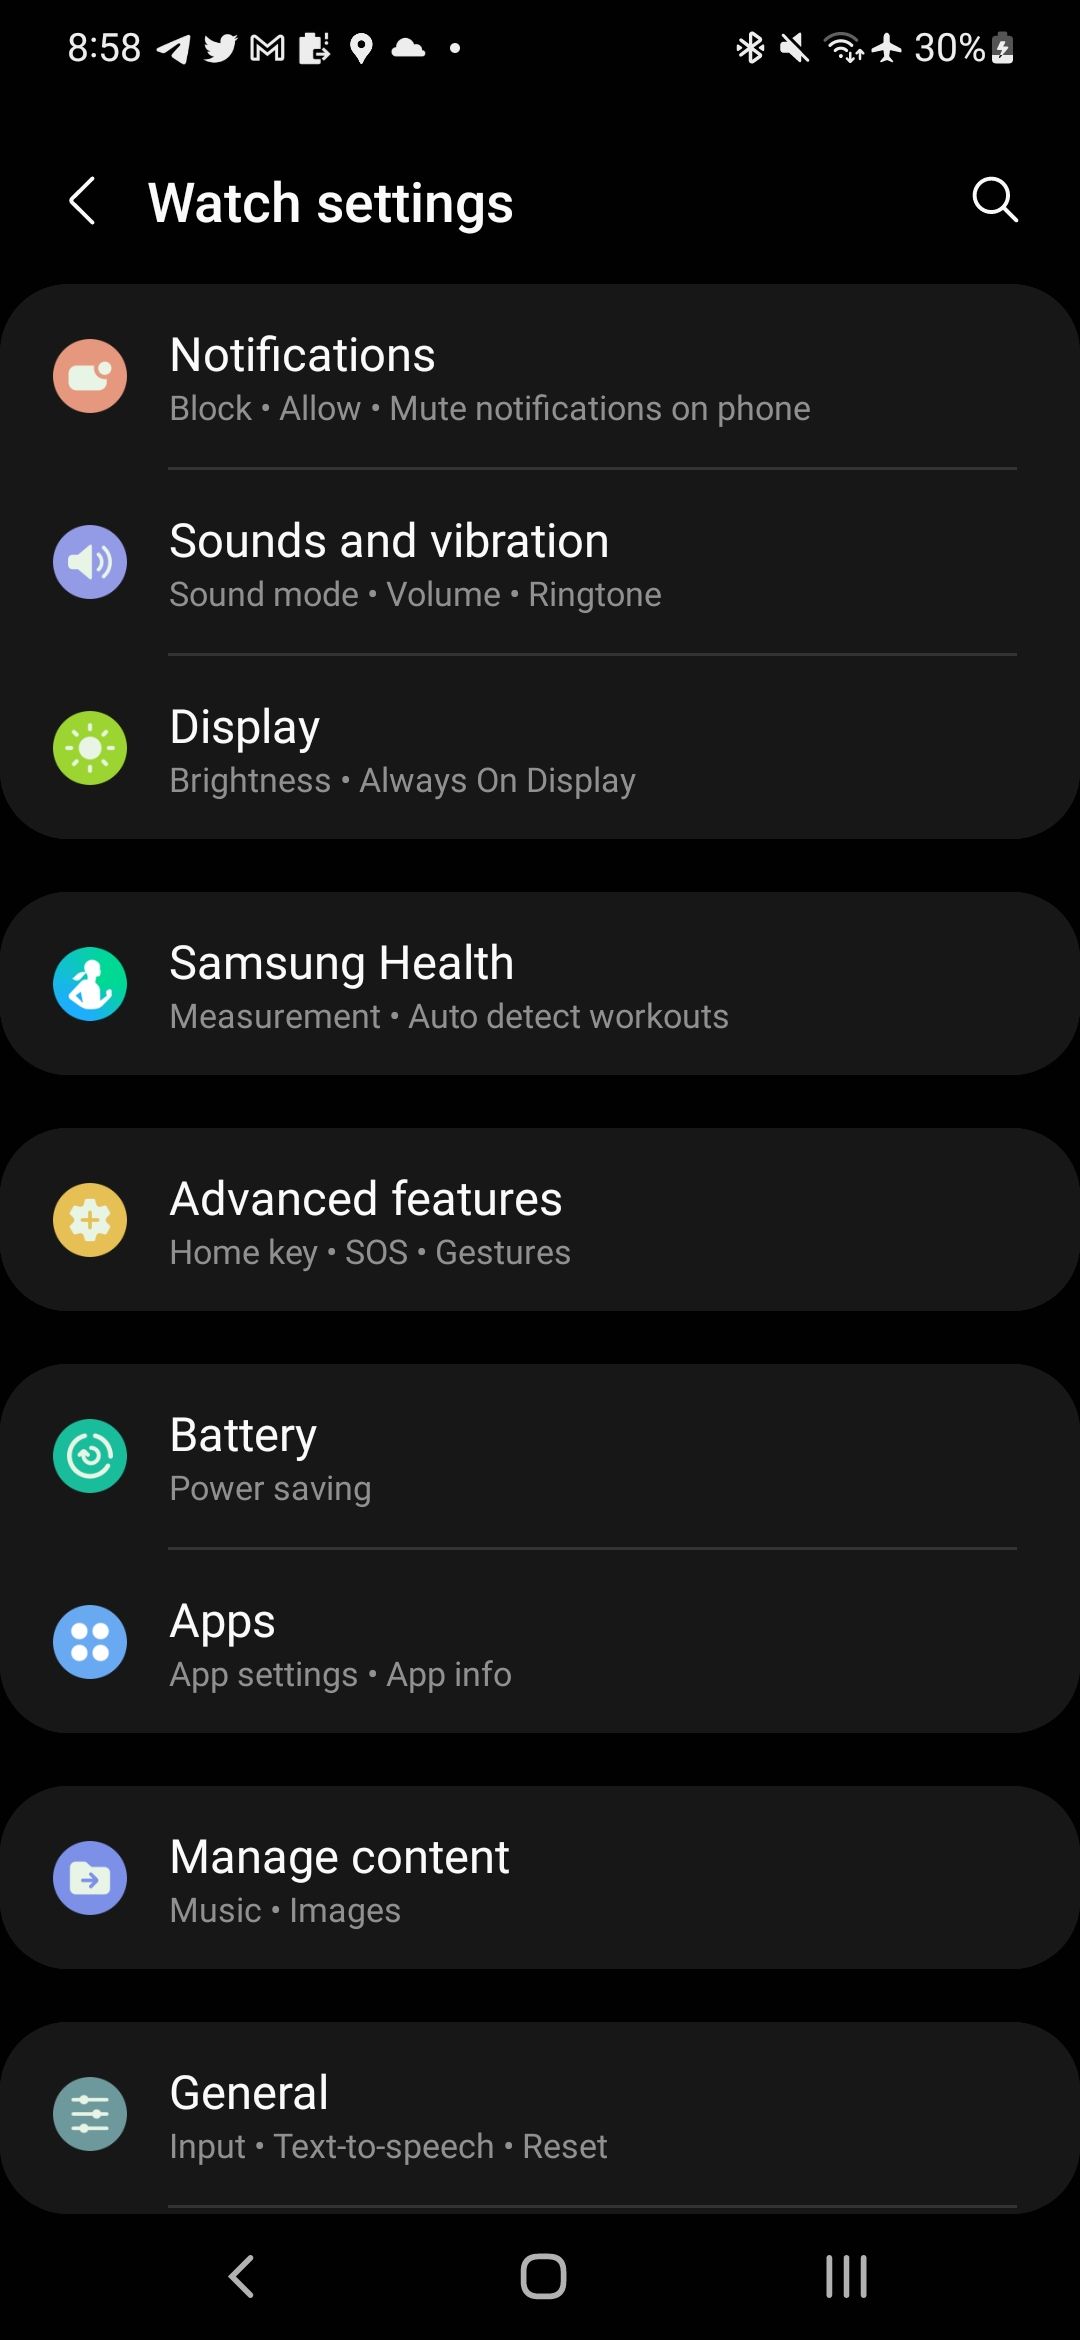 A screenshot of the Galaxy Watch settings menu.